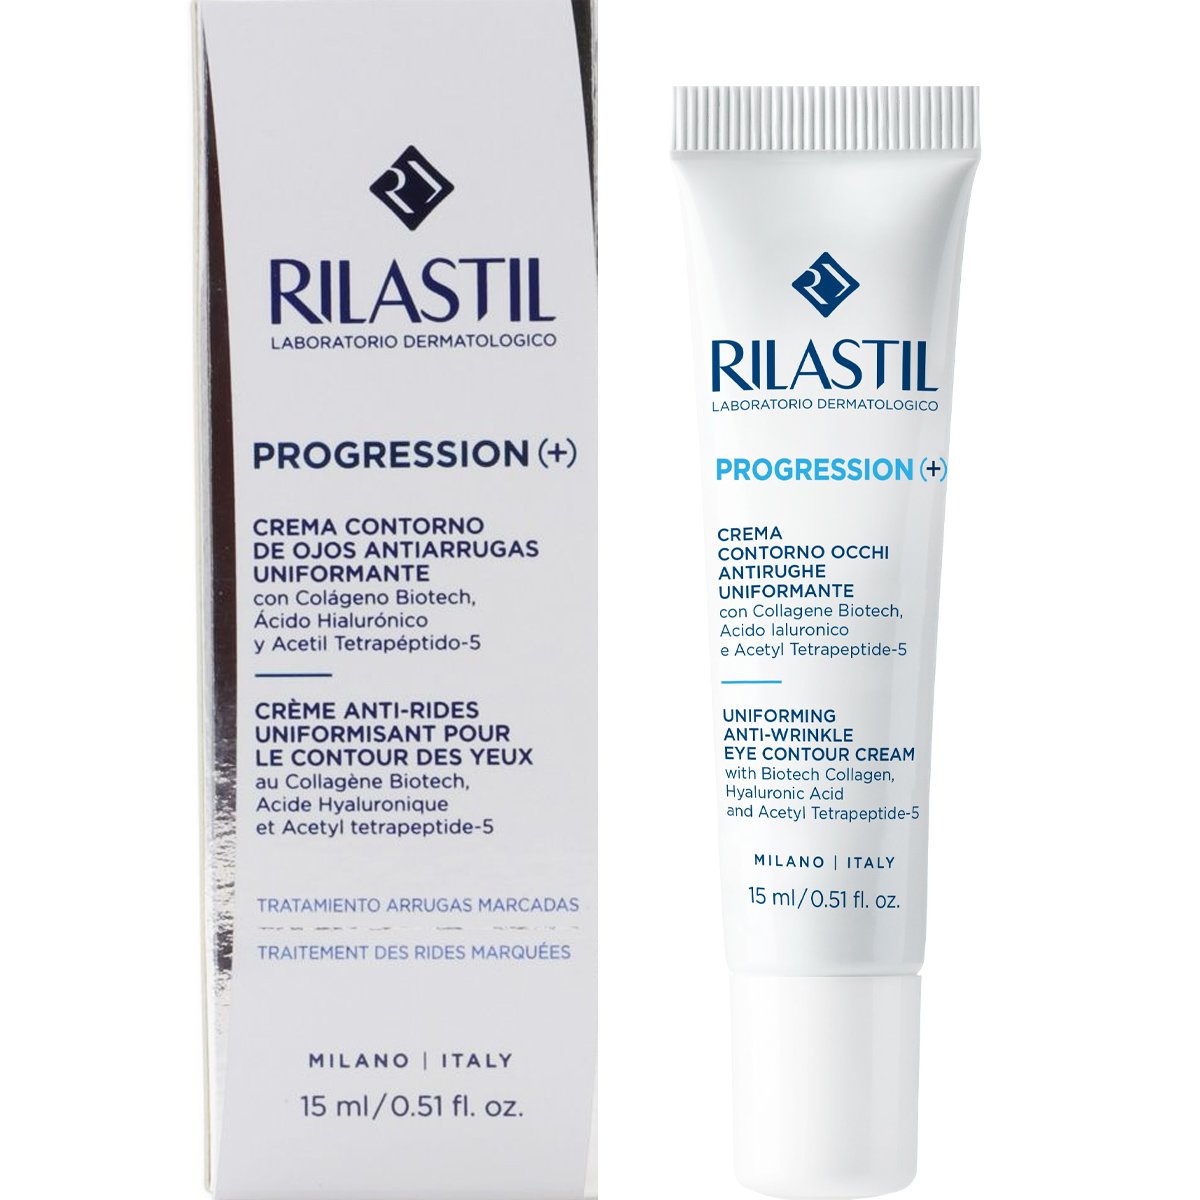 Rilastil Progression (+) Uniforming Anti-Wrinkle Eye Contour Cream Αντιρυτιδική Κρέμα Ματιών για Πρήξιμο & Μαύρους Κύκλους 15ml 56999